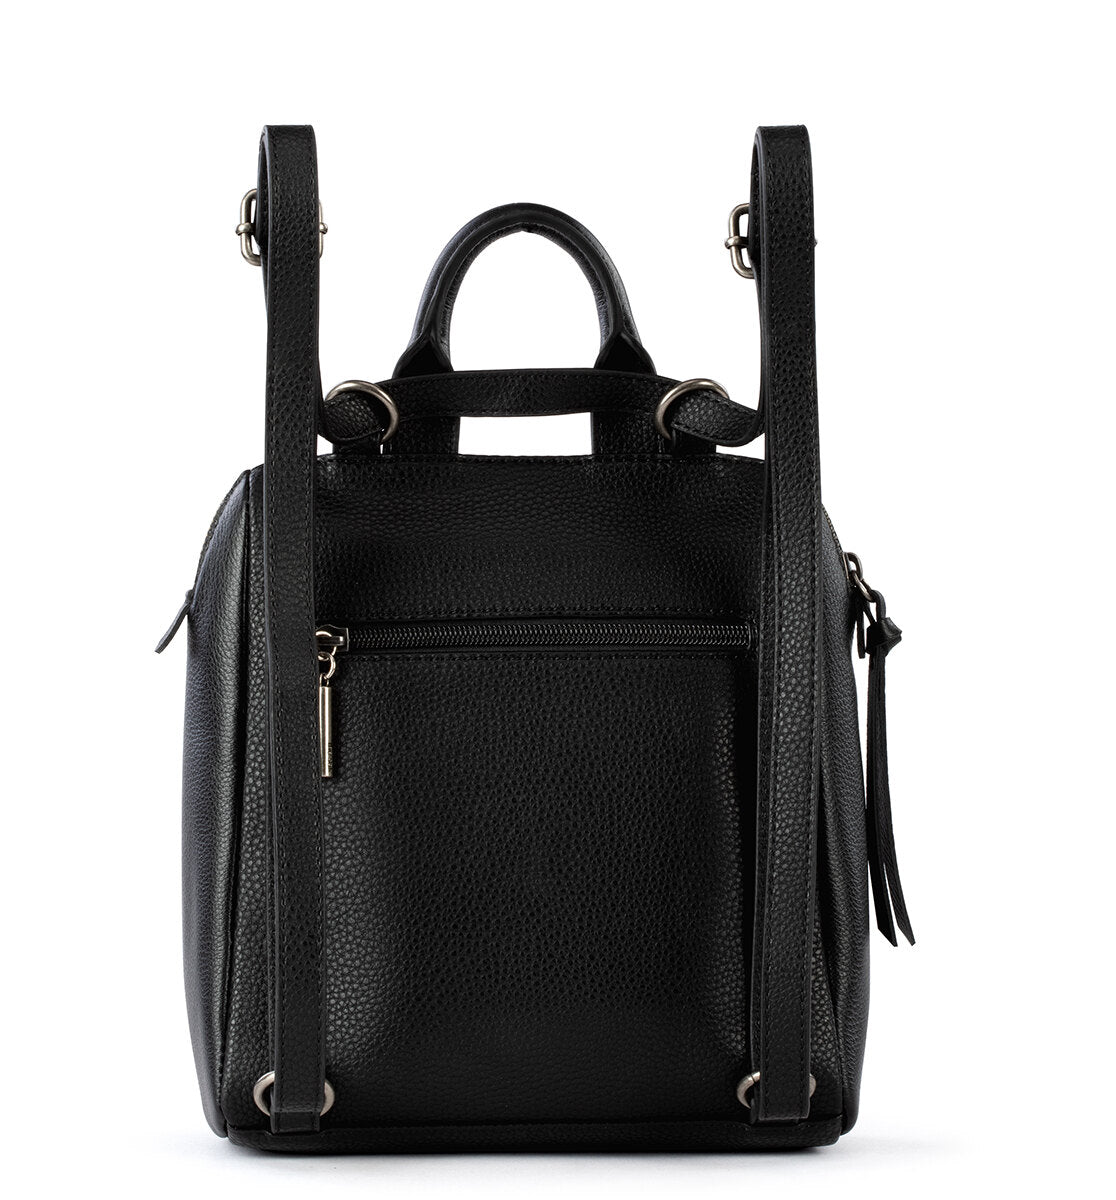 The Sak Black Leather Shoulder Bag - Bags